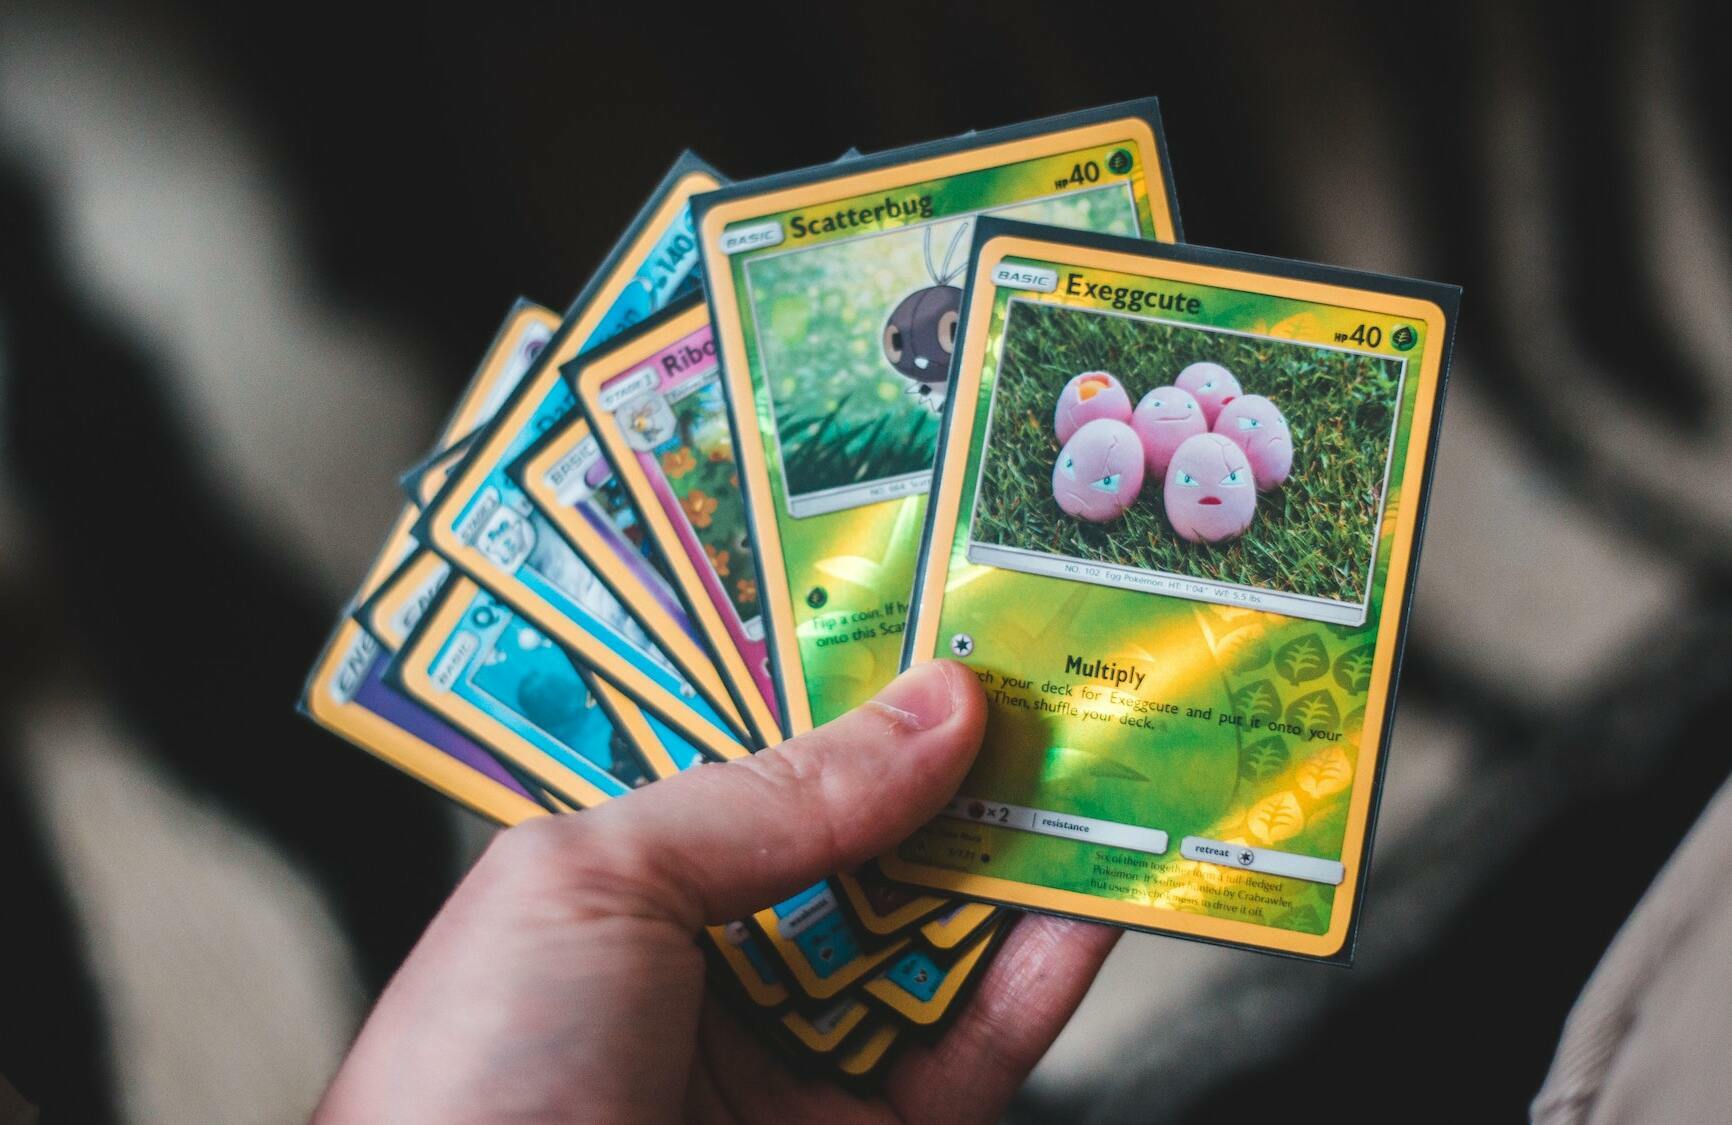 12.000 euros pour un Dracaufeu: pourquoi la valeur des cartes Pokémon  s'envole